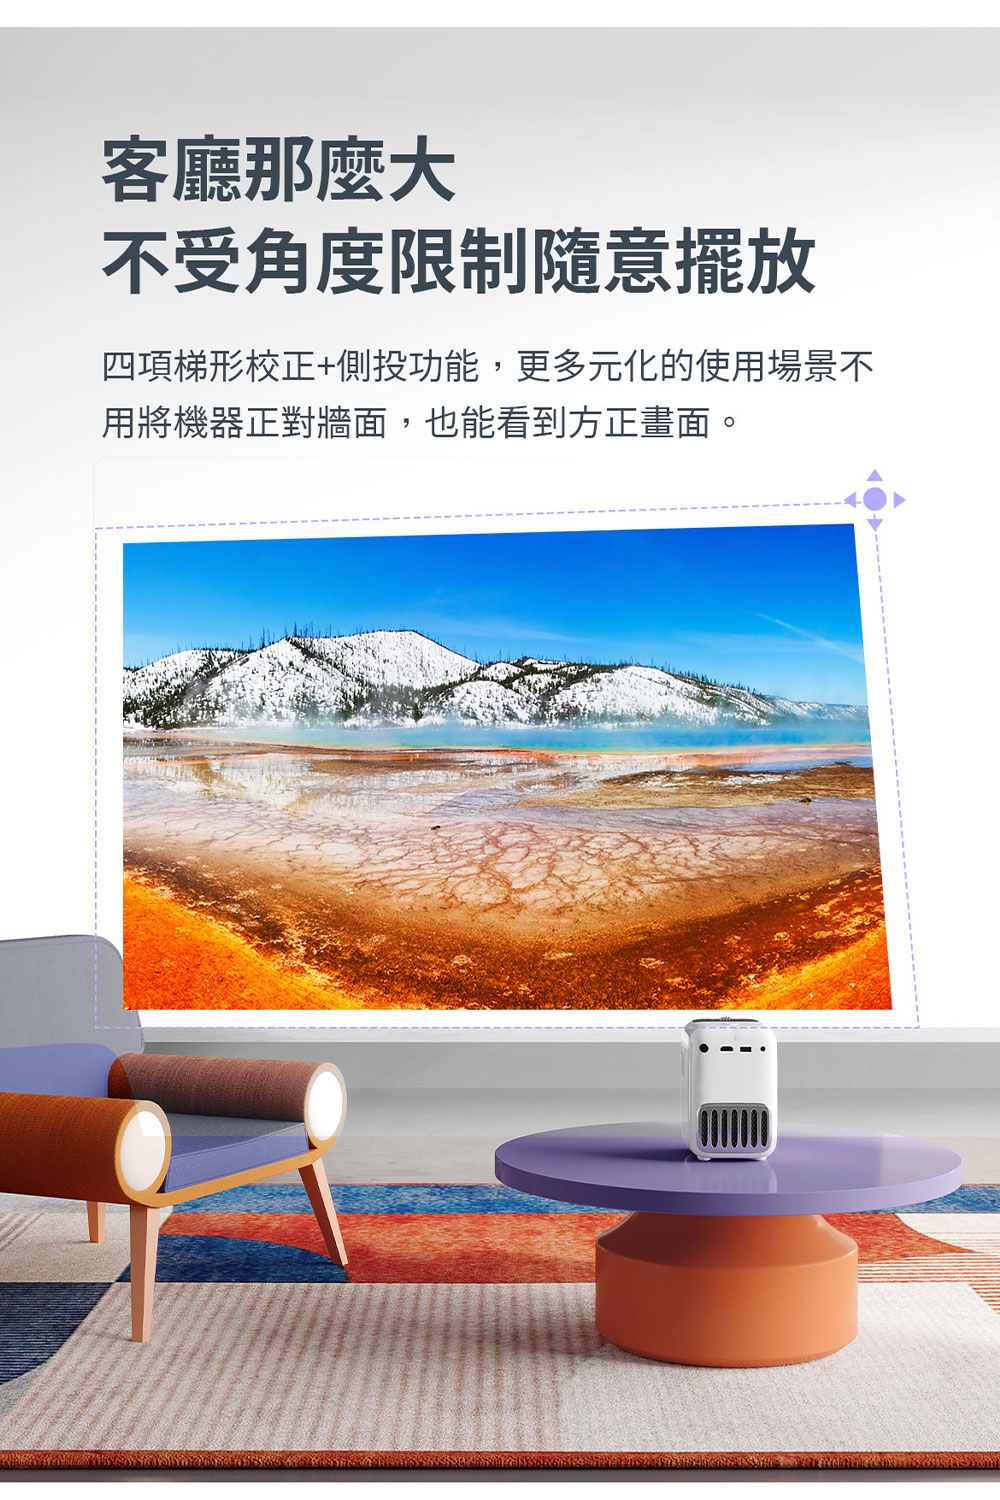 【萬播 Wanbo】T2R Max攜帶式智慧投影機 微型投影機 1080P 